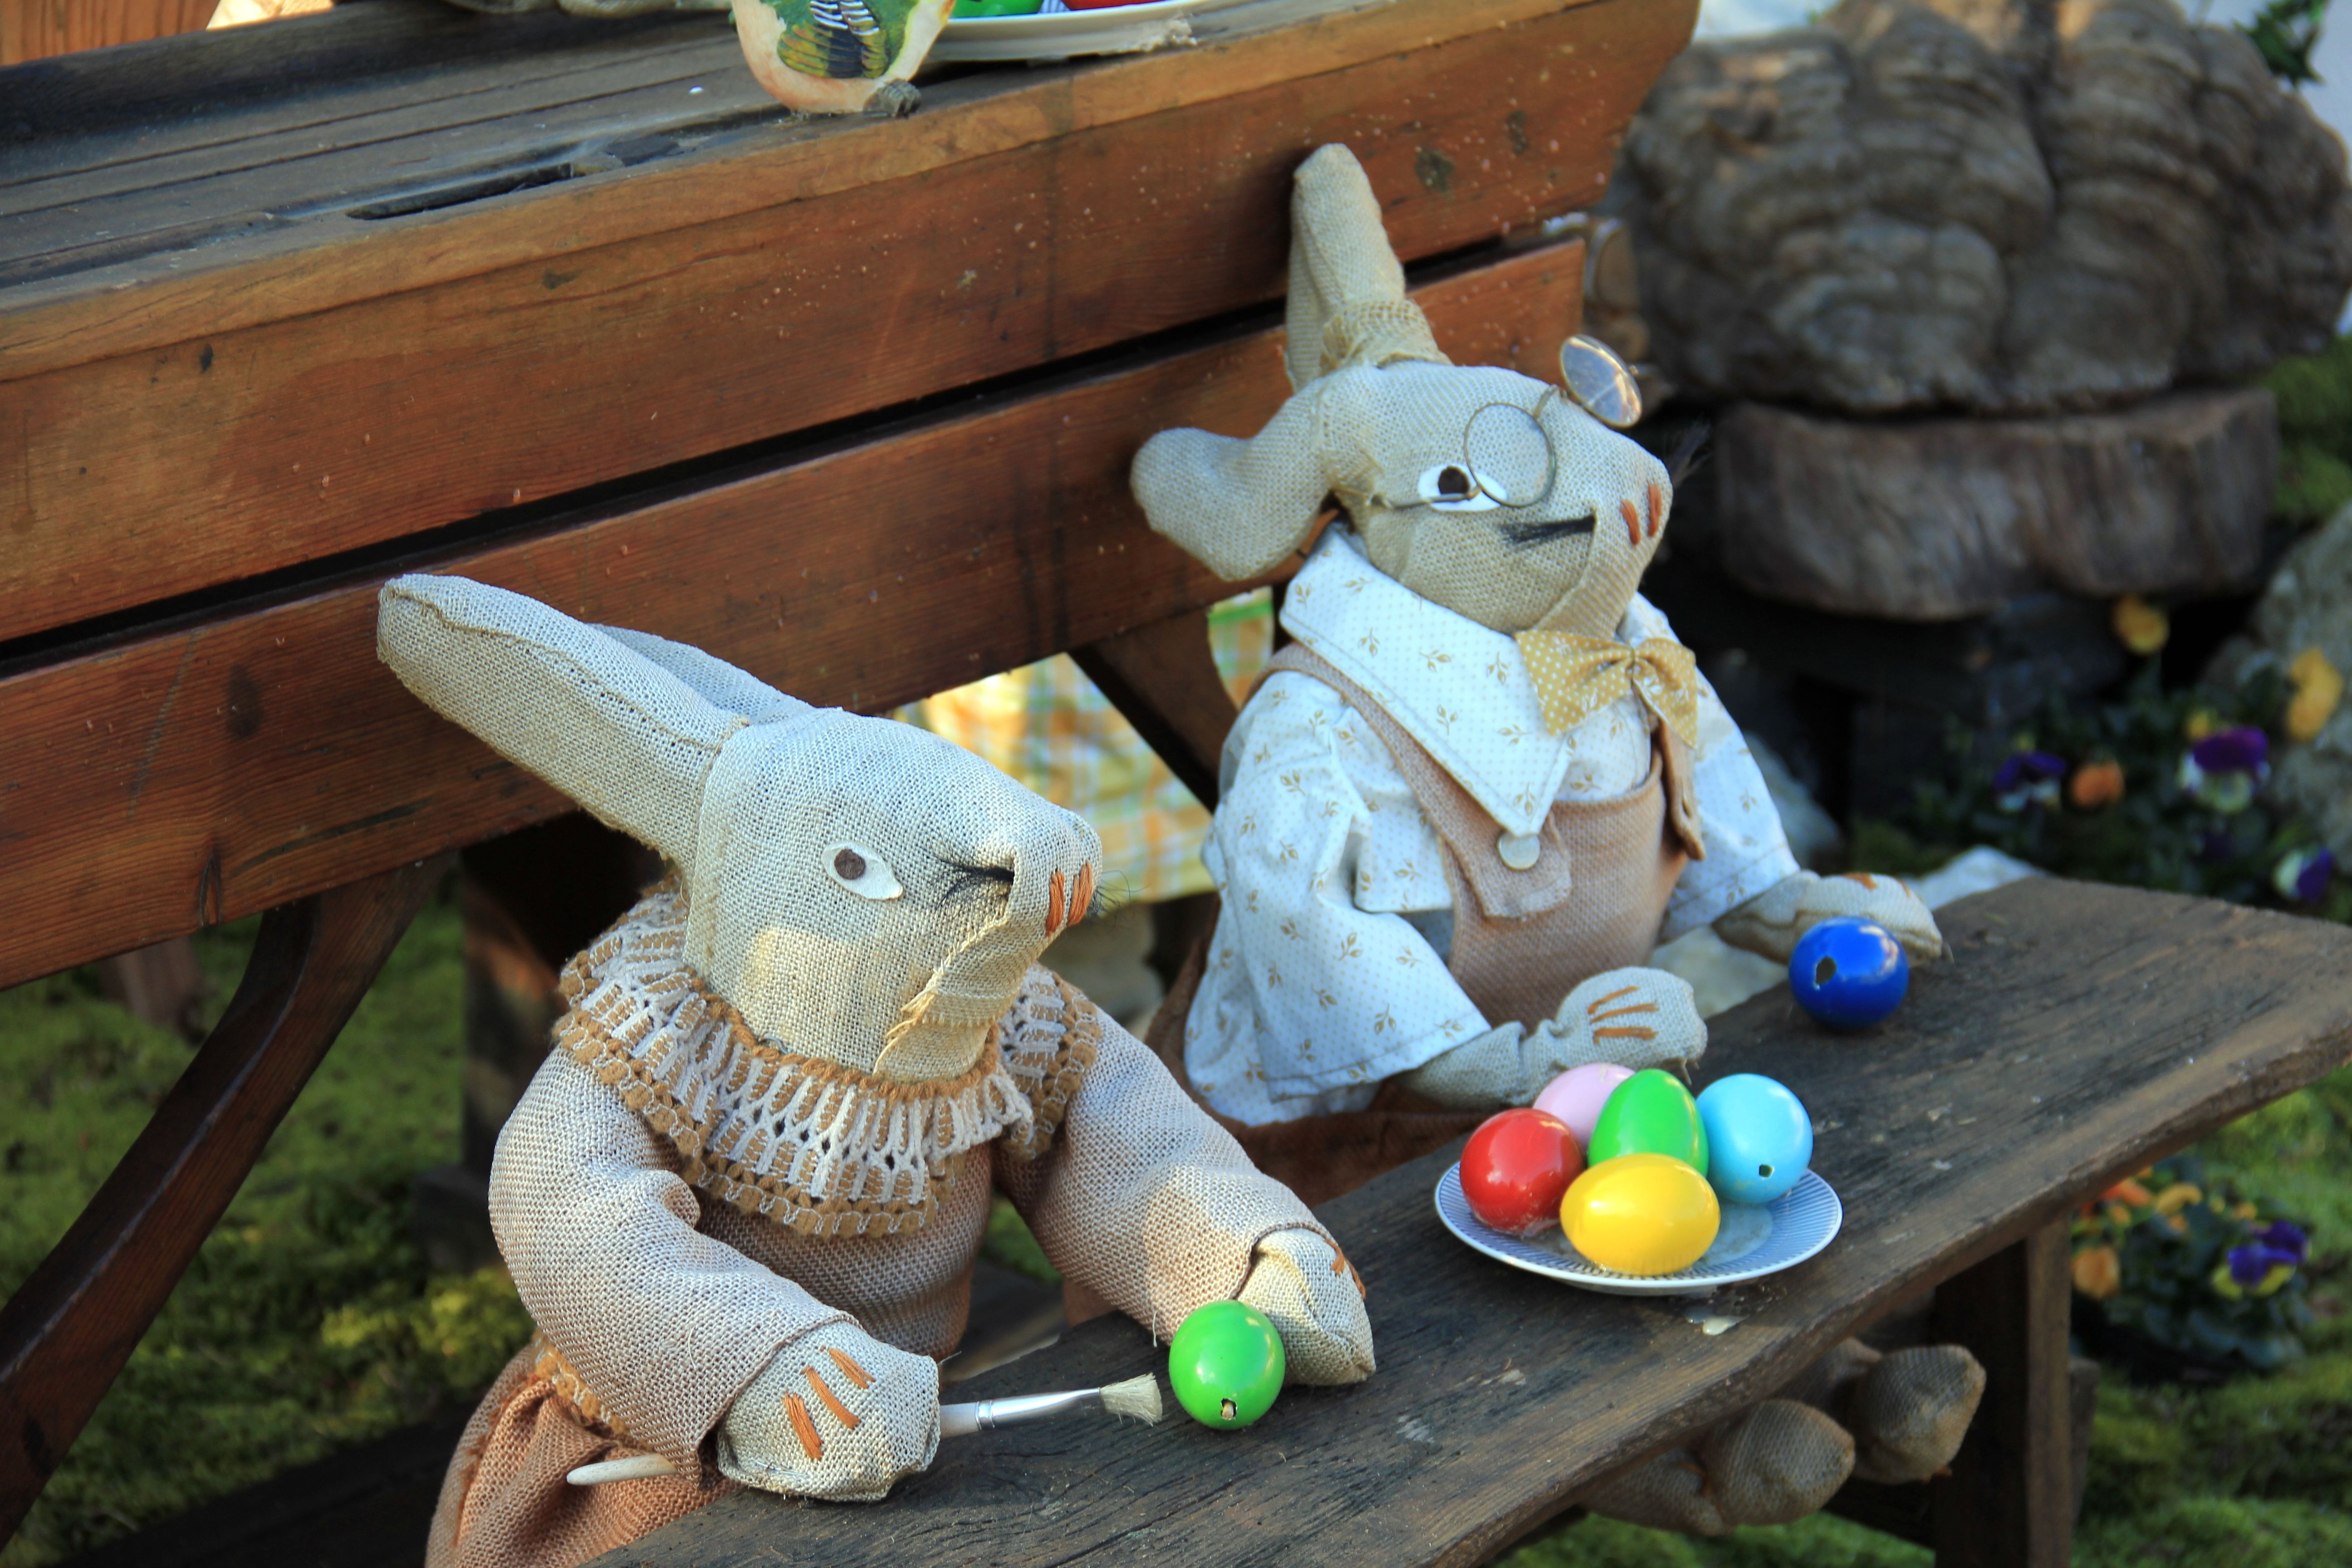 two bunny plush toys